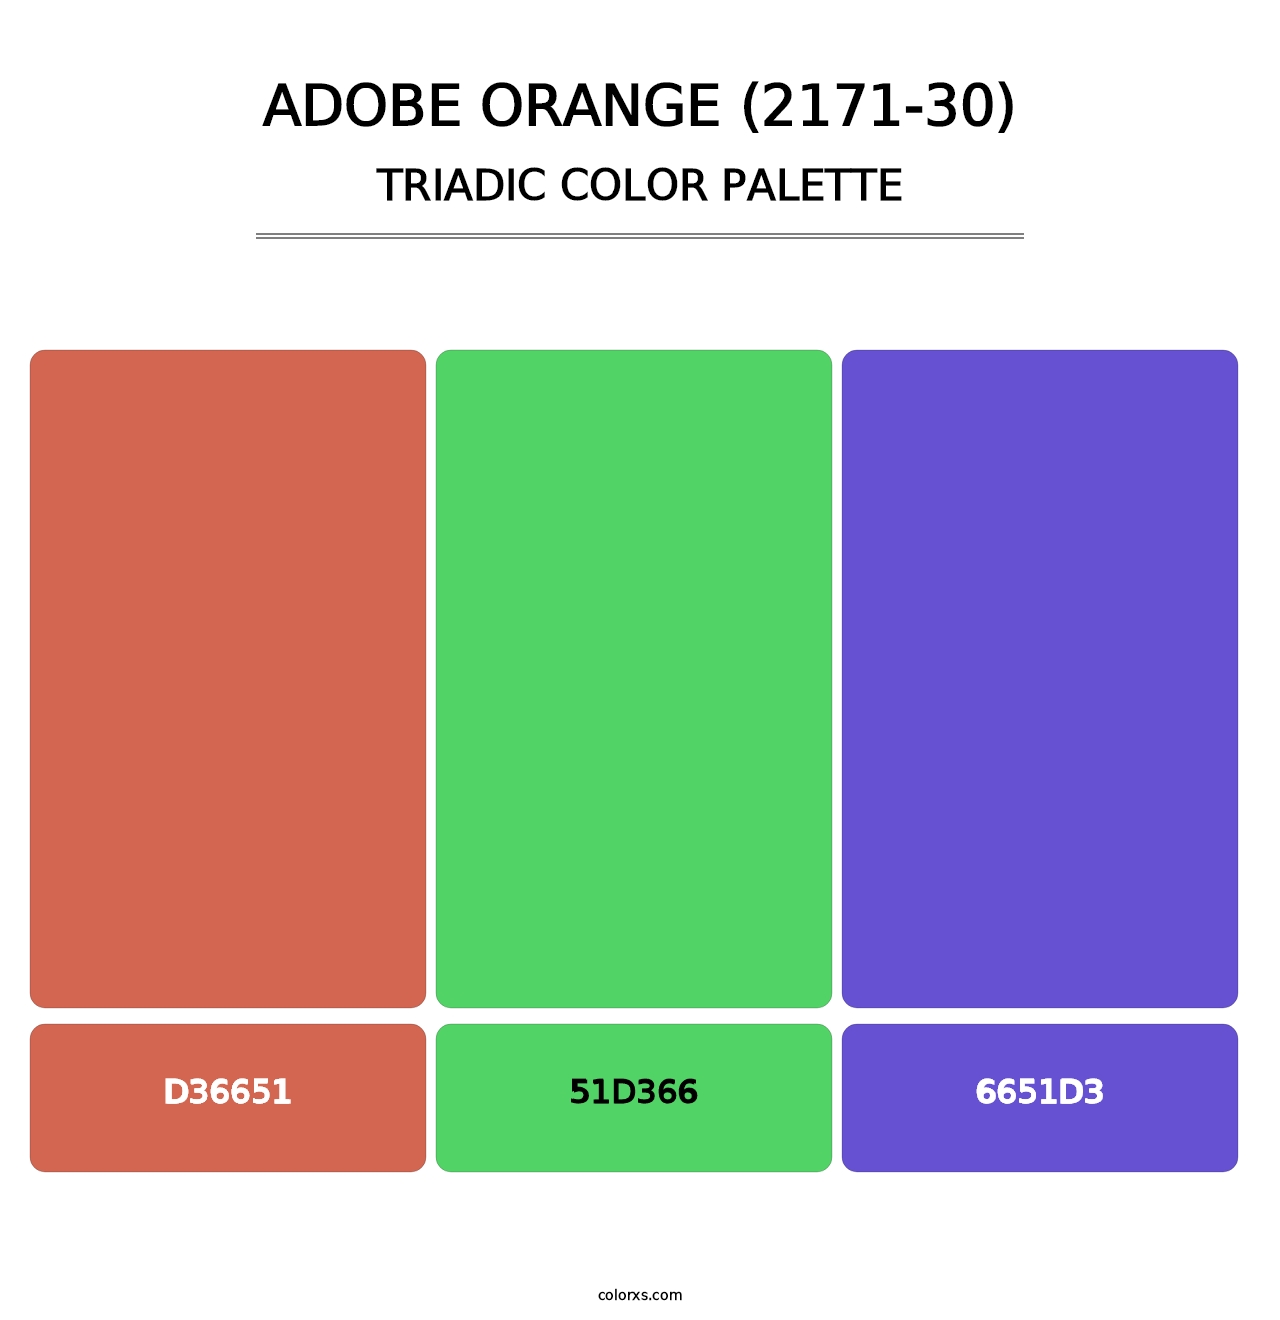 Adobe Orange (2171-30) - Triadic Color Palette